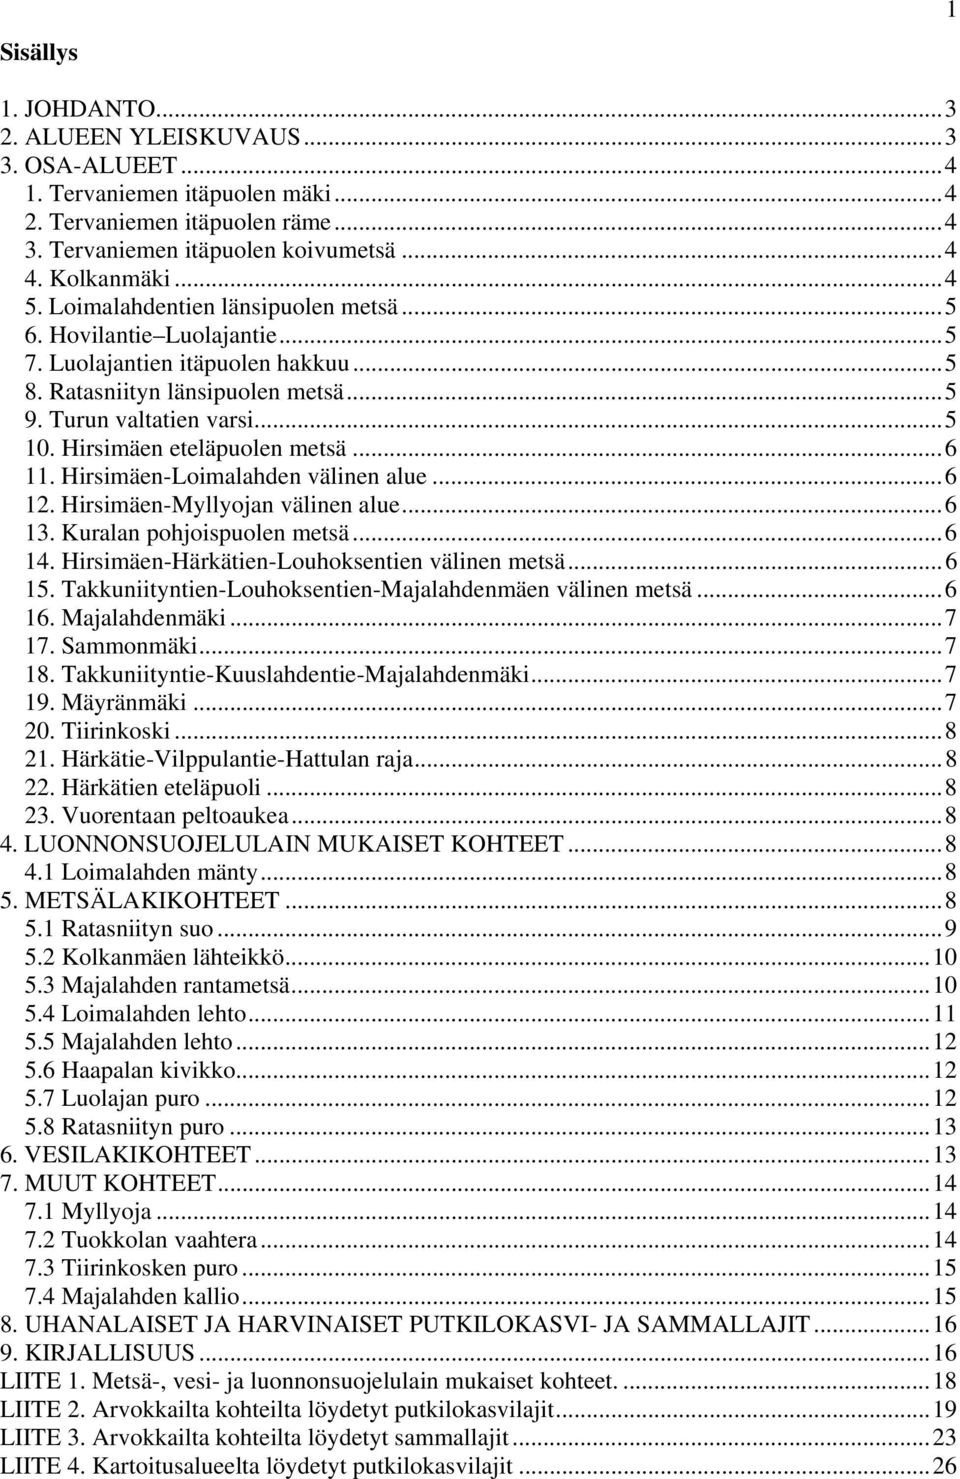 Hirsimäen eteläpuolen metsä...6. Hirsimäen-Loimalahden välinen alue...6 2. Hirsimäen-Myllyojan välinen alue...6 3. Kuralan pohjoispuolen metsä...6 4. Hirsimäen-Härkätien-Louhoksentien välinen metsä.